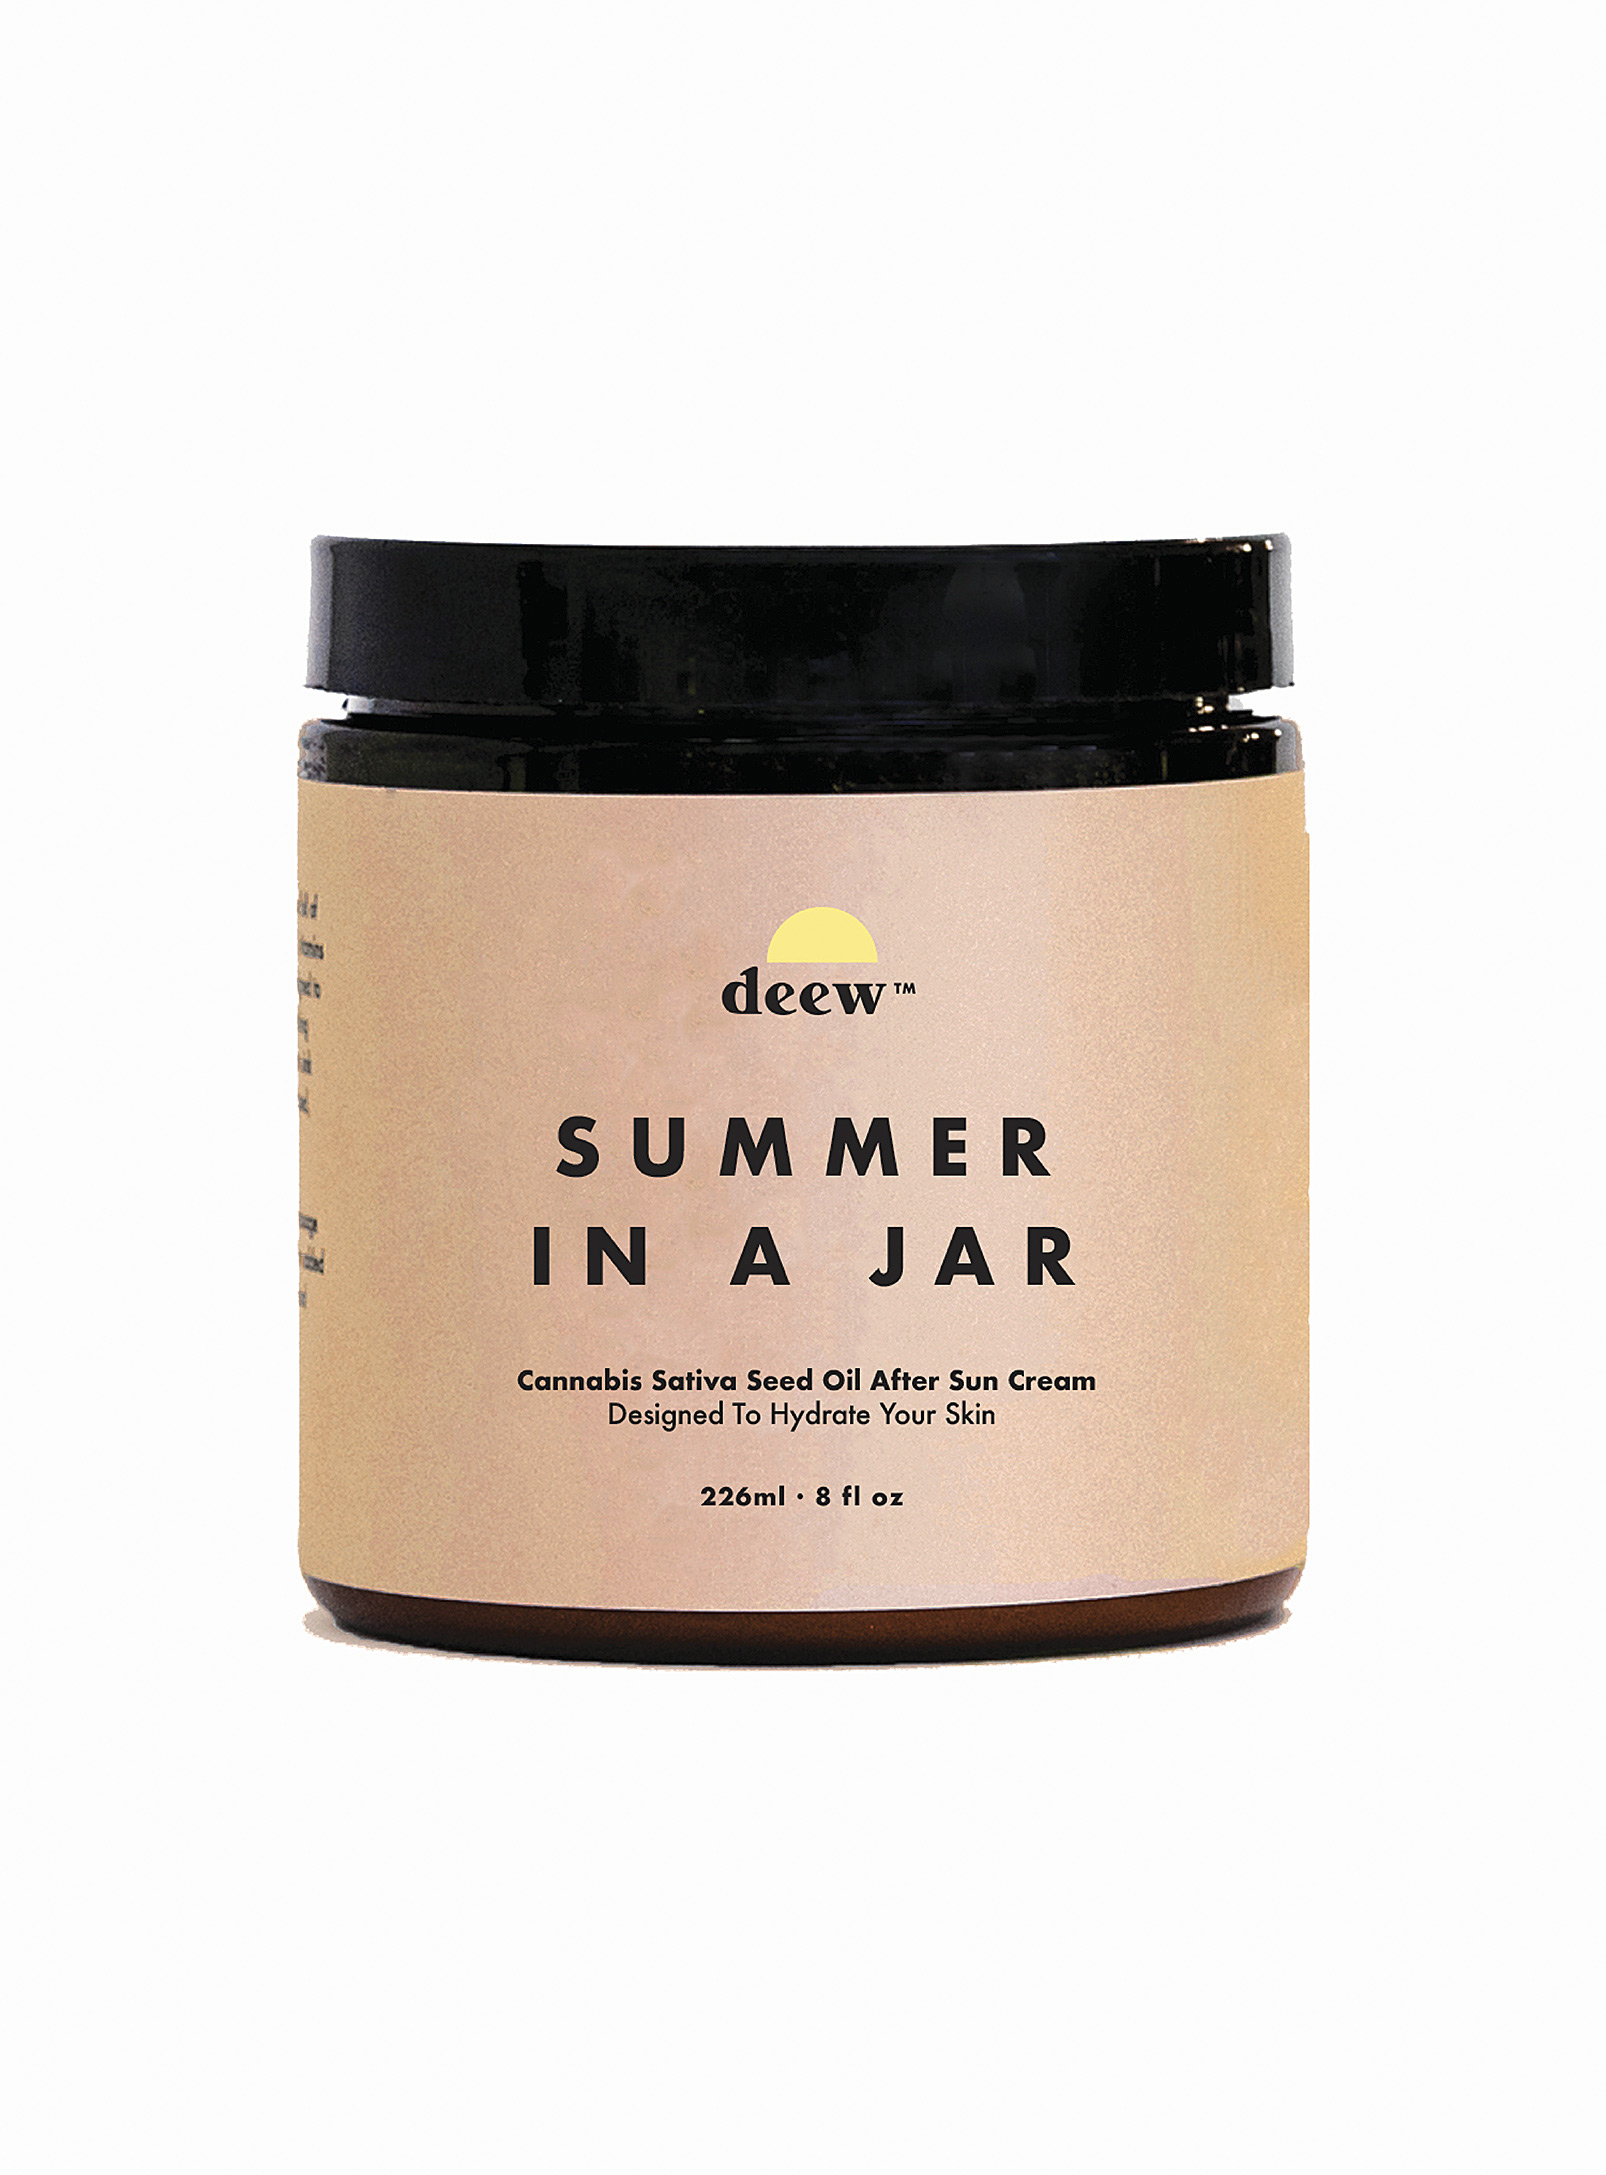 Deew - Summer in a Jar hemp oil after sun cream